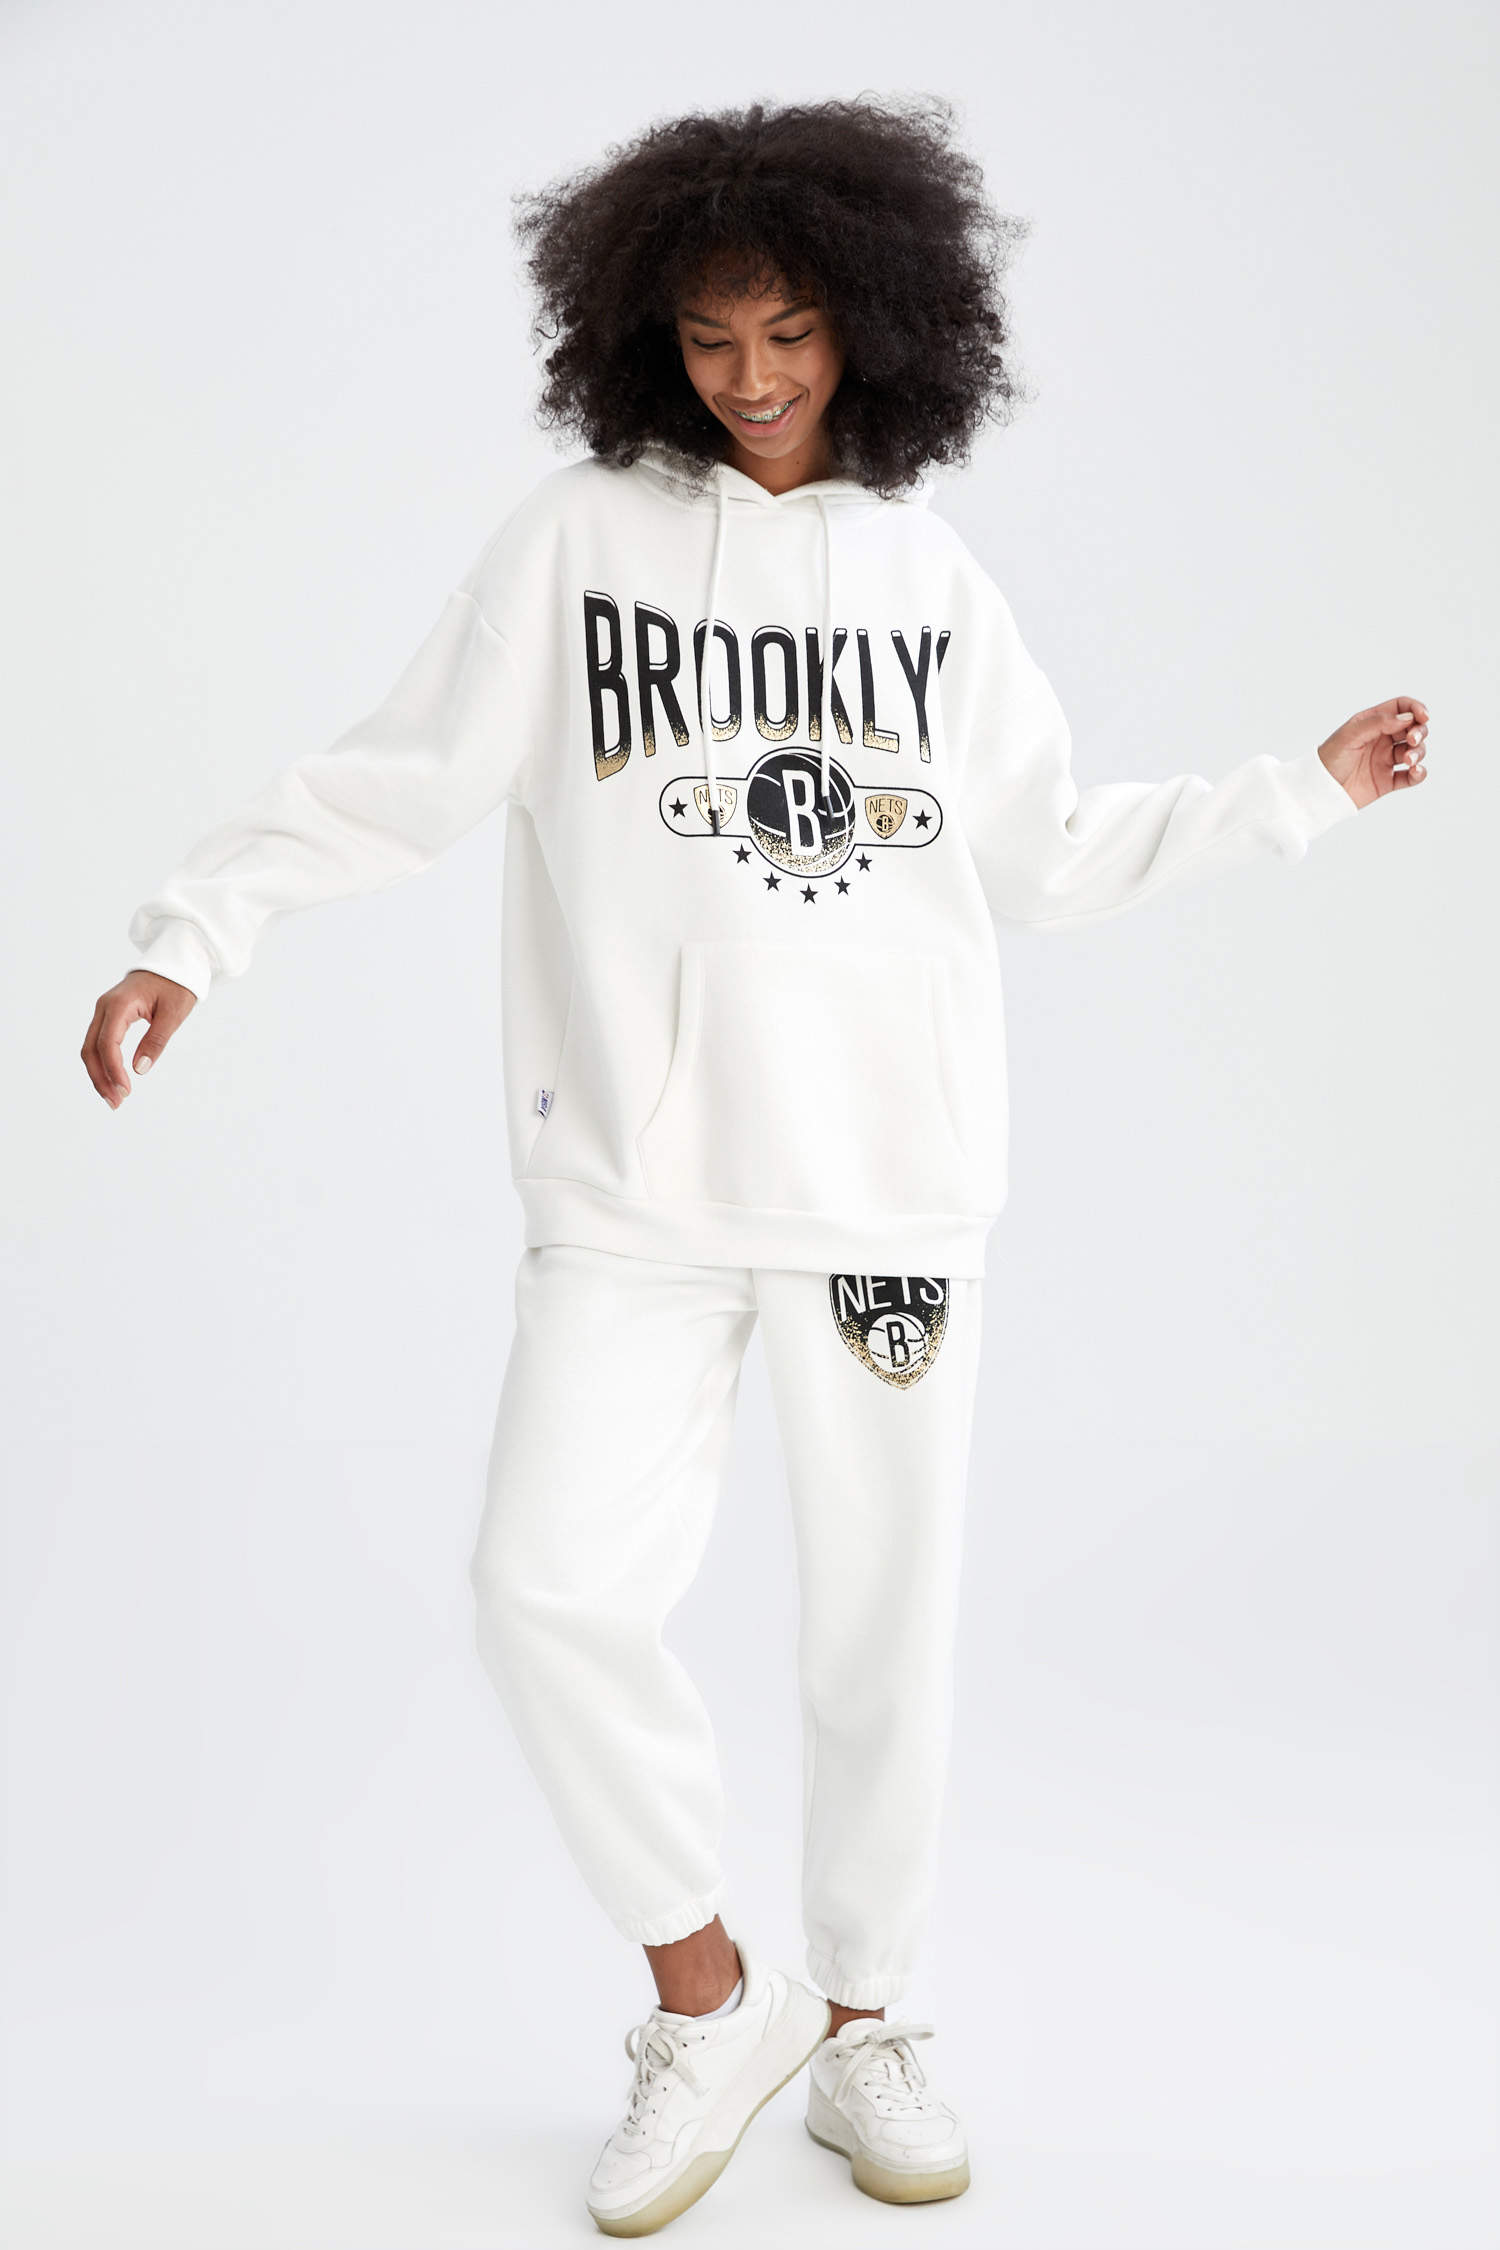 Defacto Fit Brooklyn Nets Lisanslı Cepli Kalın Sweatshirt Kumaşı İçi Yumuşak Tüylü Eşofman Alt. 4